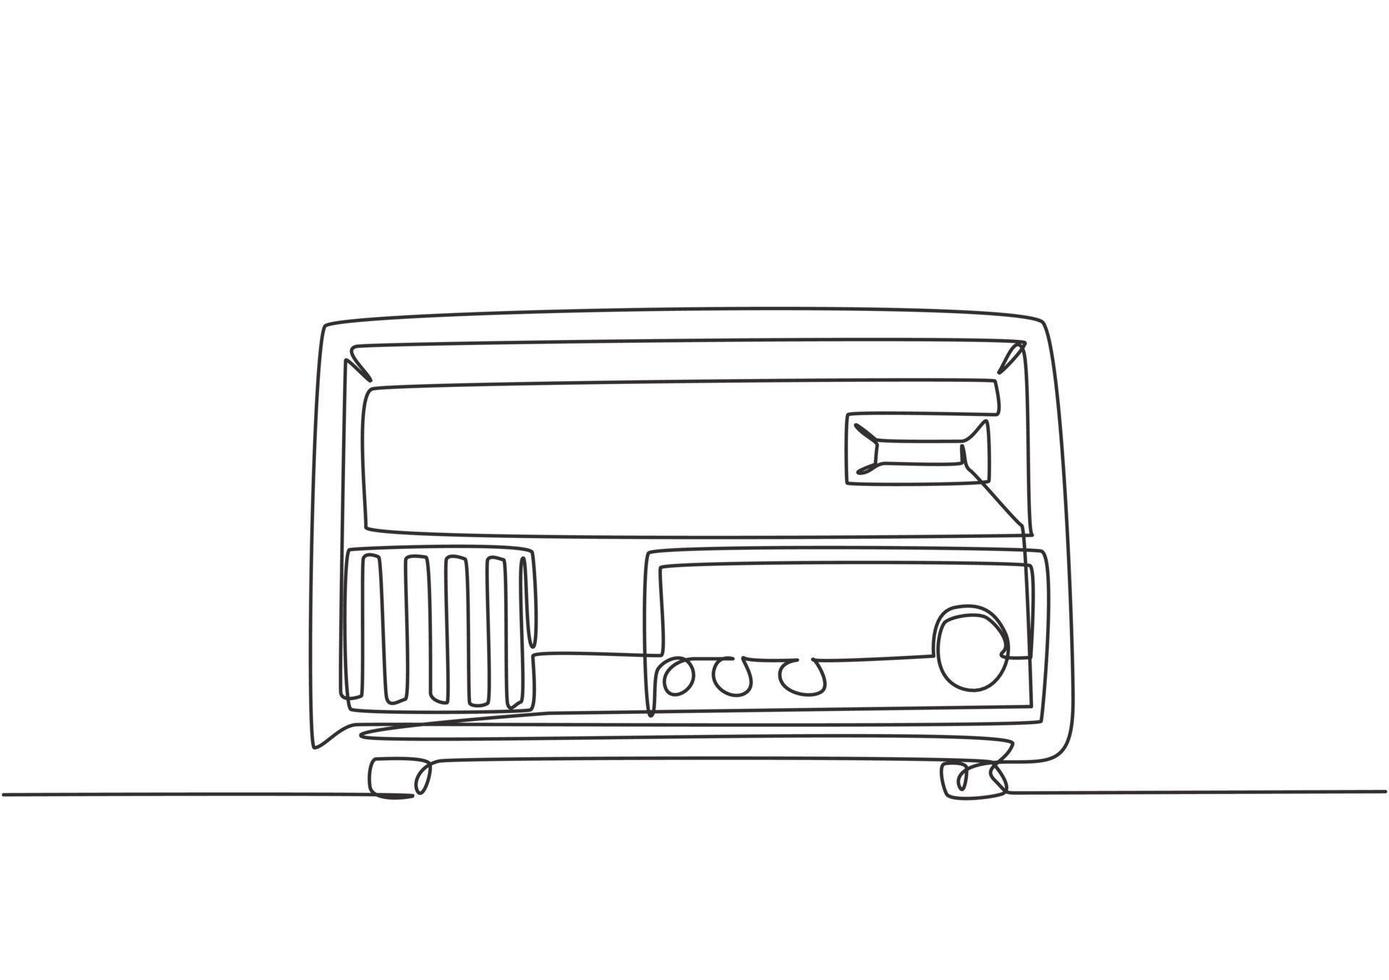 enda kontinuerlig linje ritning av retro gammaldags analog radio. klassiskt vintage sändare teknik koncept. musikspelare en rad rita design grafisk vektorillustration vektor